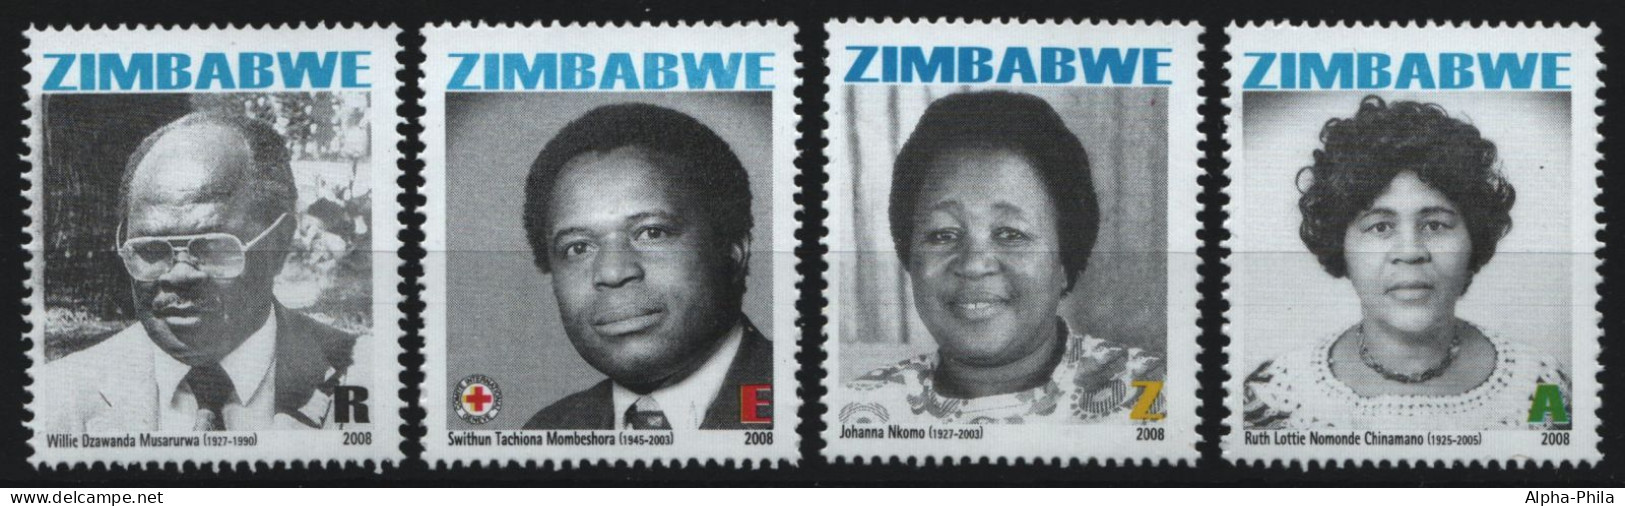 Simbabwe 2008 - Mi-Nr. 905-908 ** - MNH - Nationalhelden - Zimbabwe (1980-...)